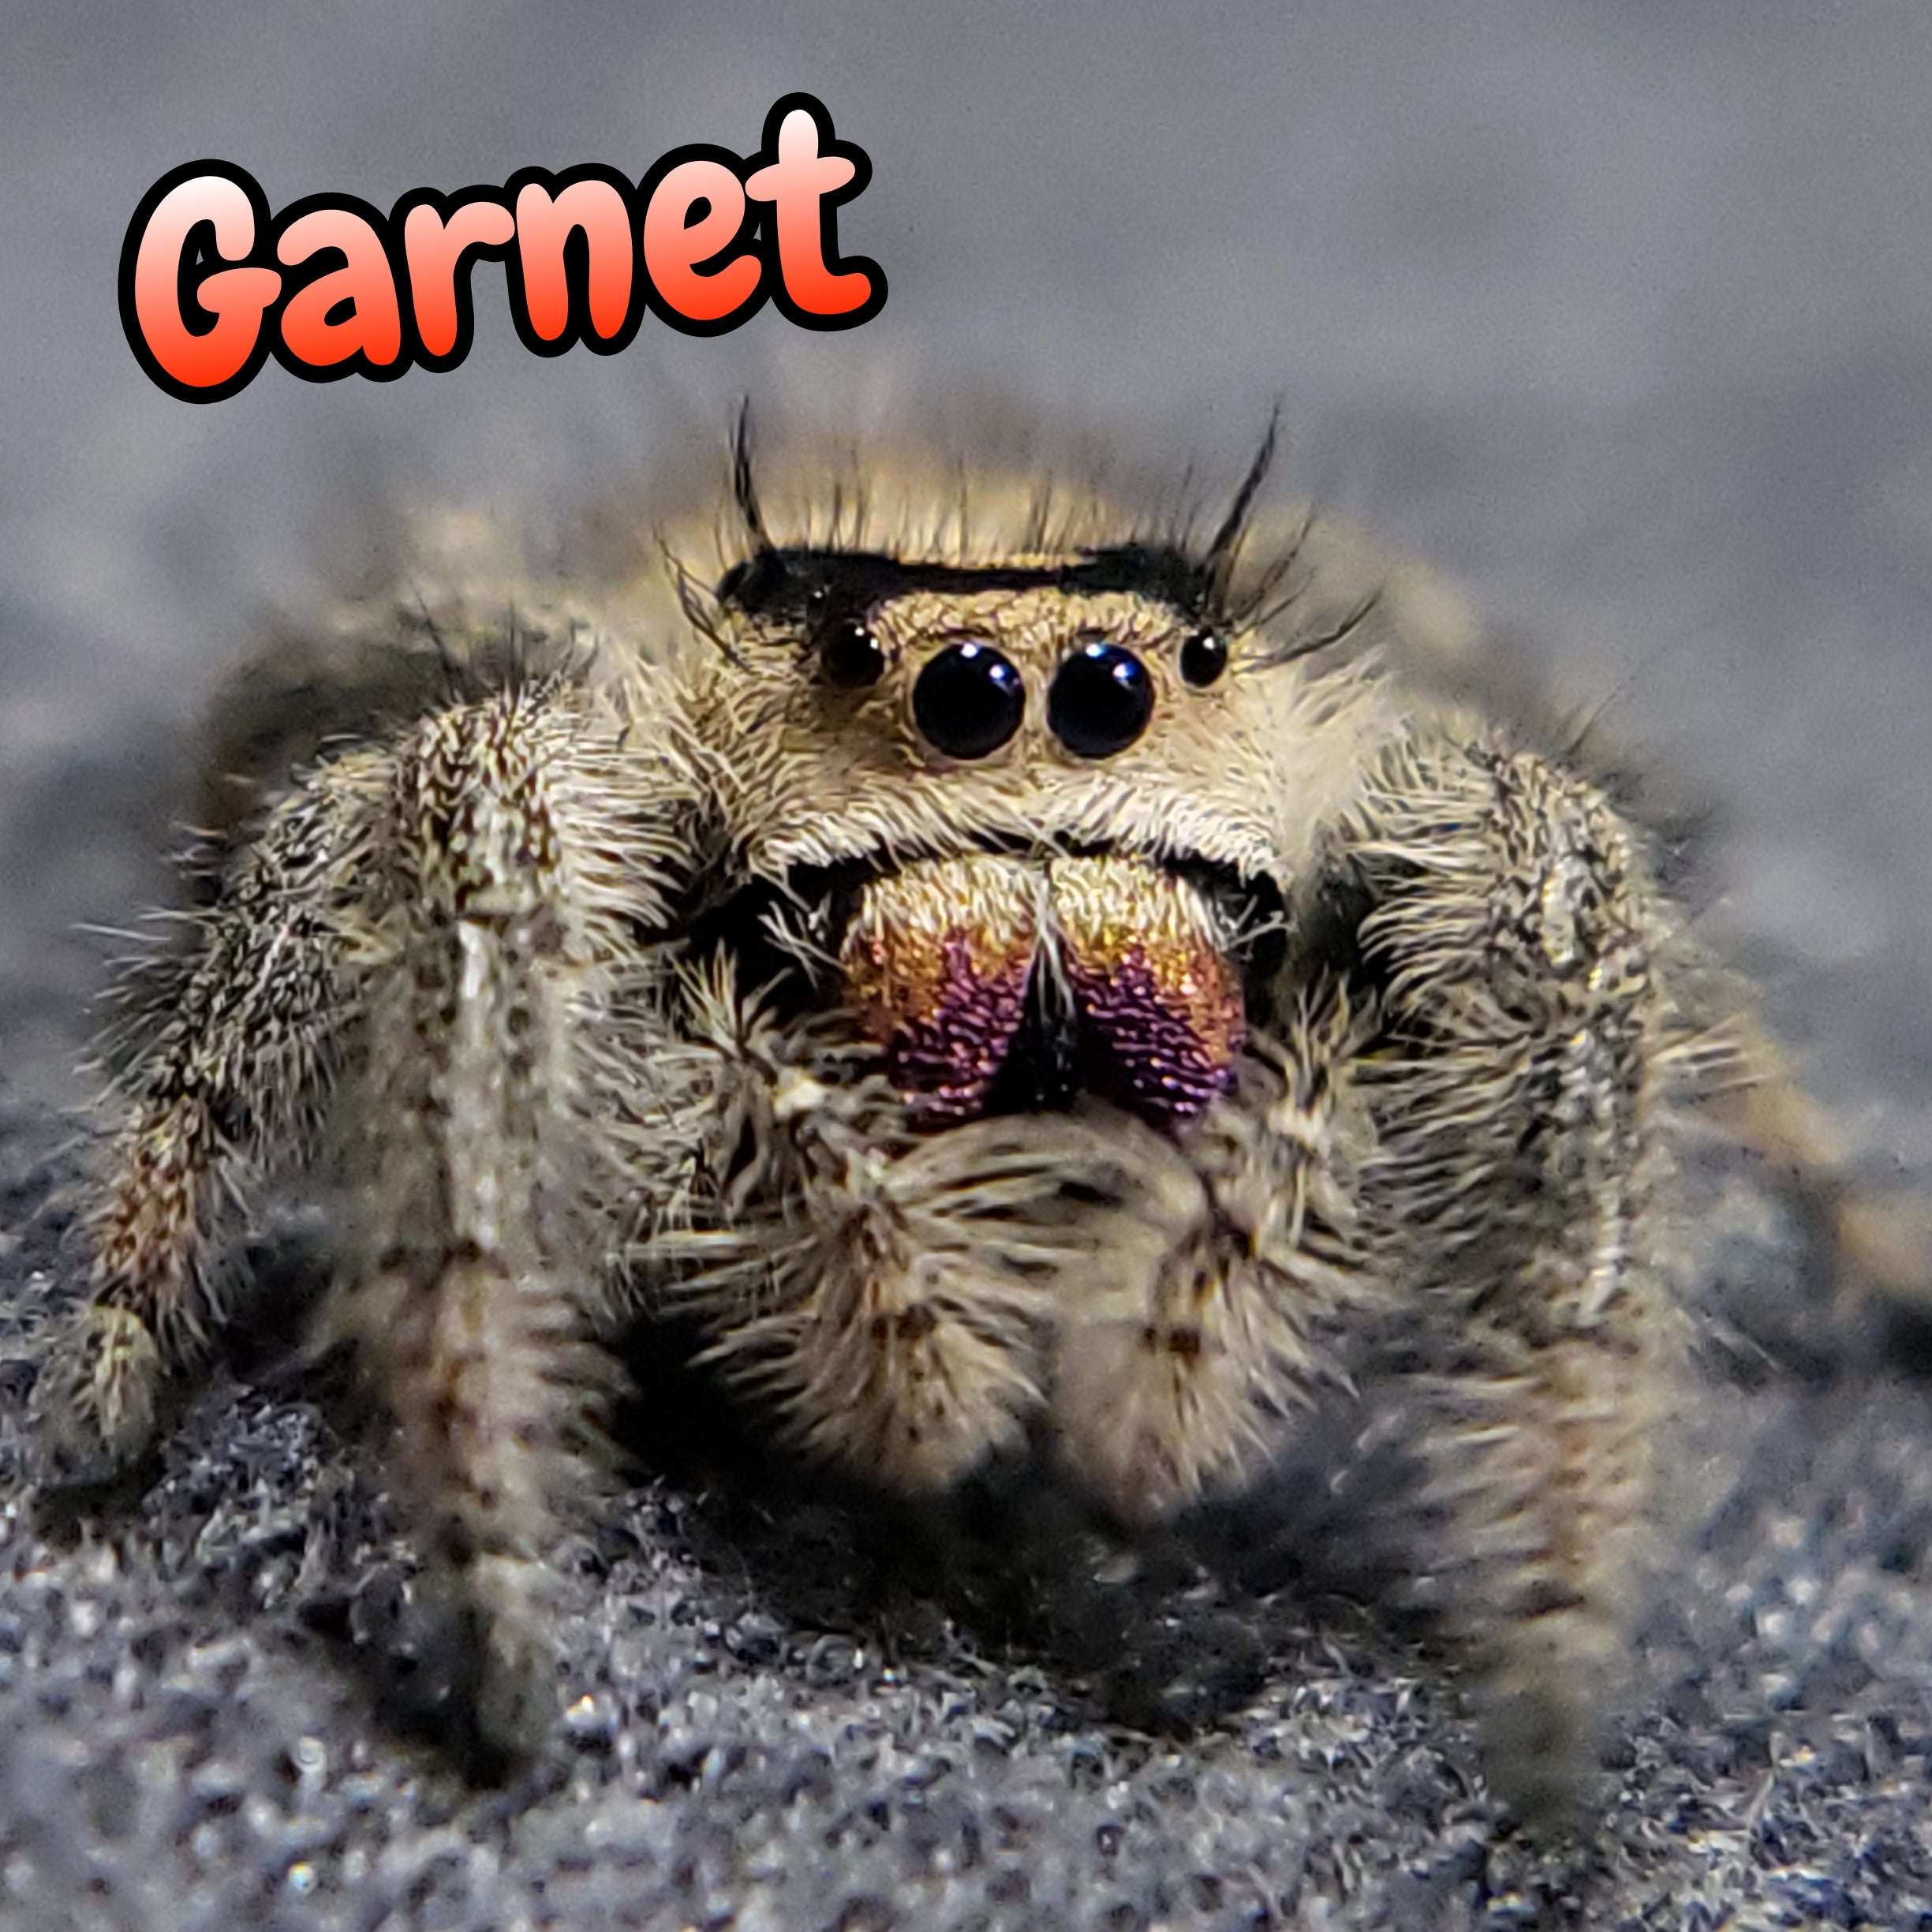 Regal Jumping Spider "Garnet"